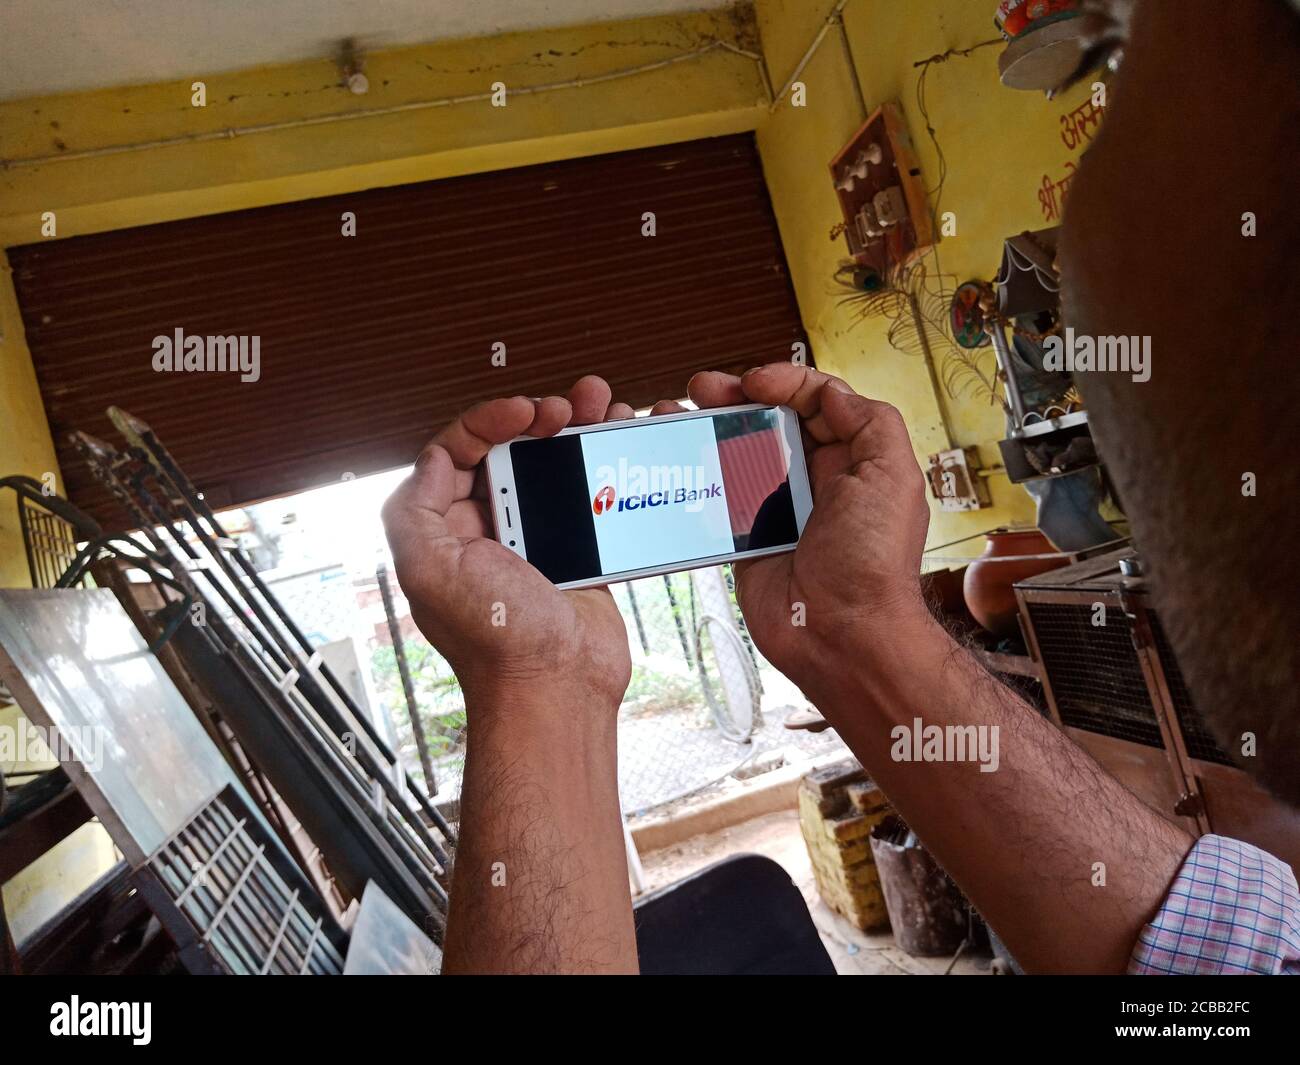 DISTRETTO KATNI, INDIA - 02 GIUGNO 2020: Un ragazzo indiano che tiene smartphone con visualizzazione del logo IICI Bank sullo schermo, concetto di istruzione bancaria moderna f Foto Stock